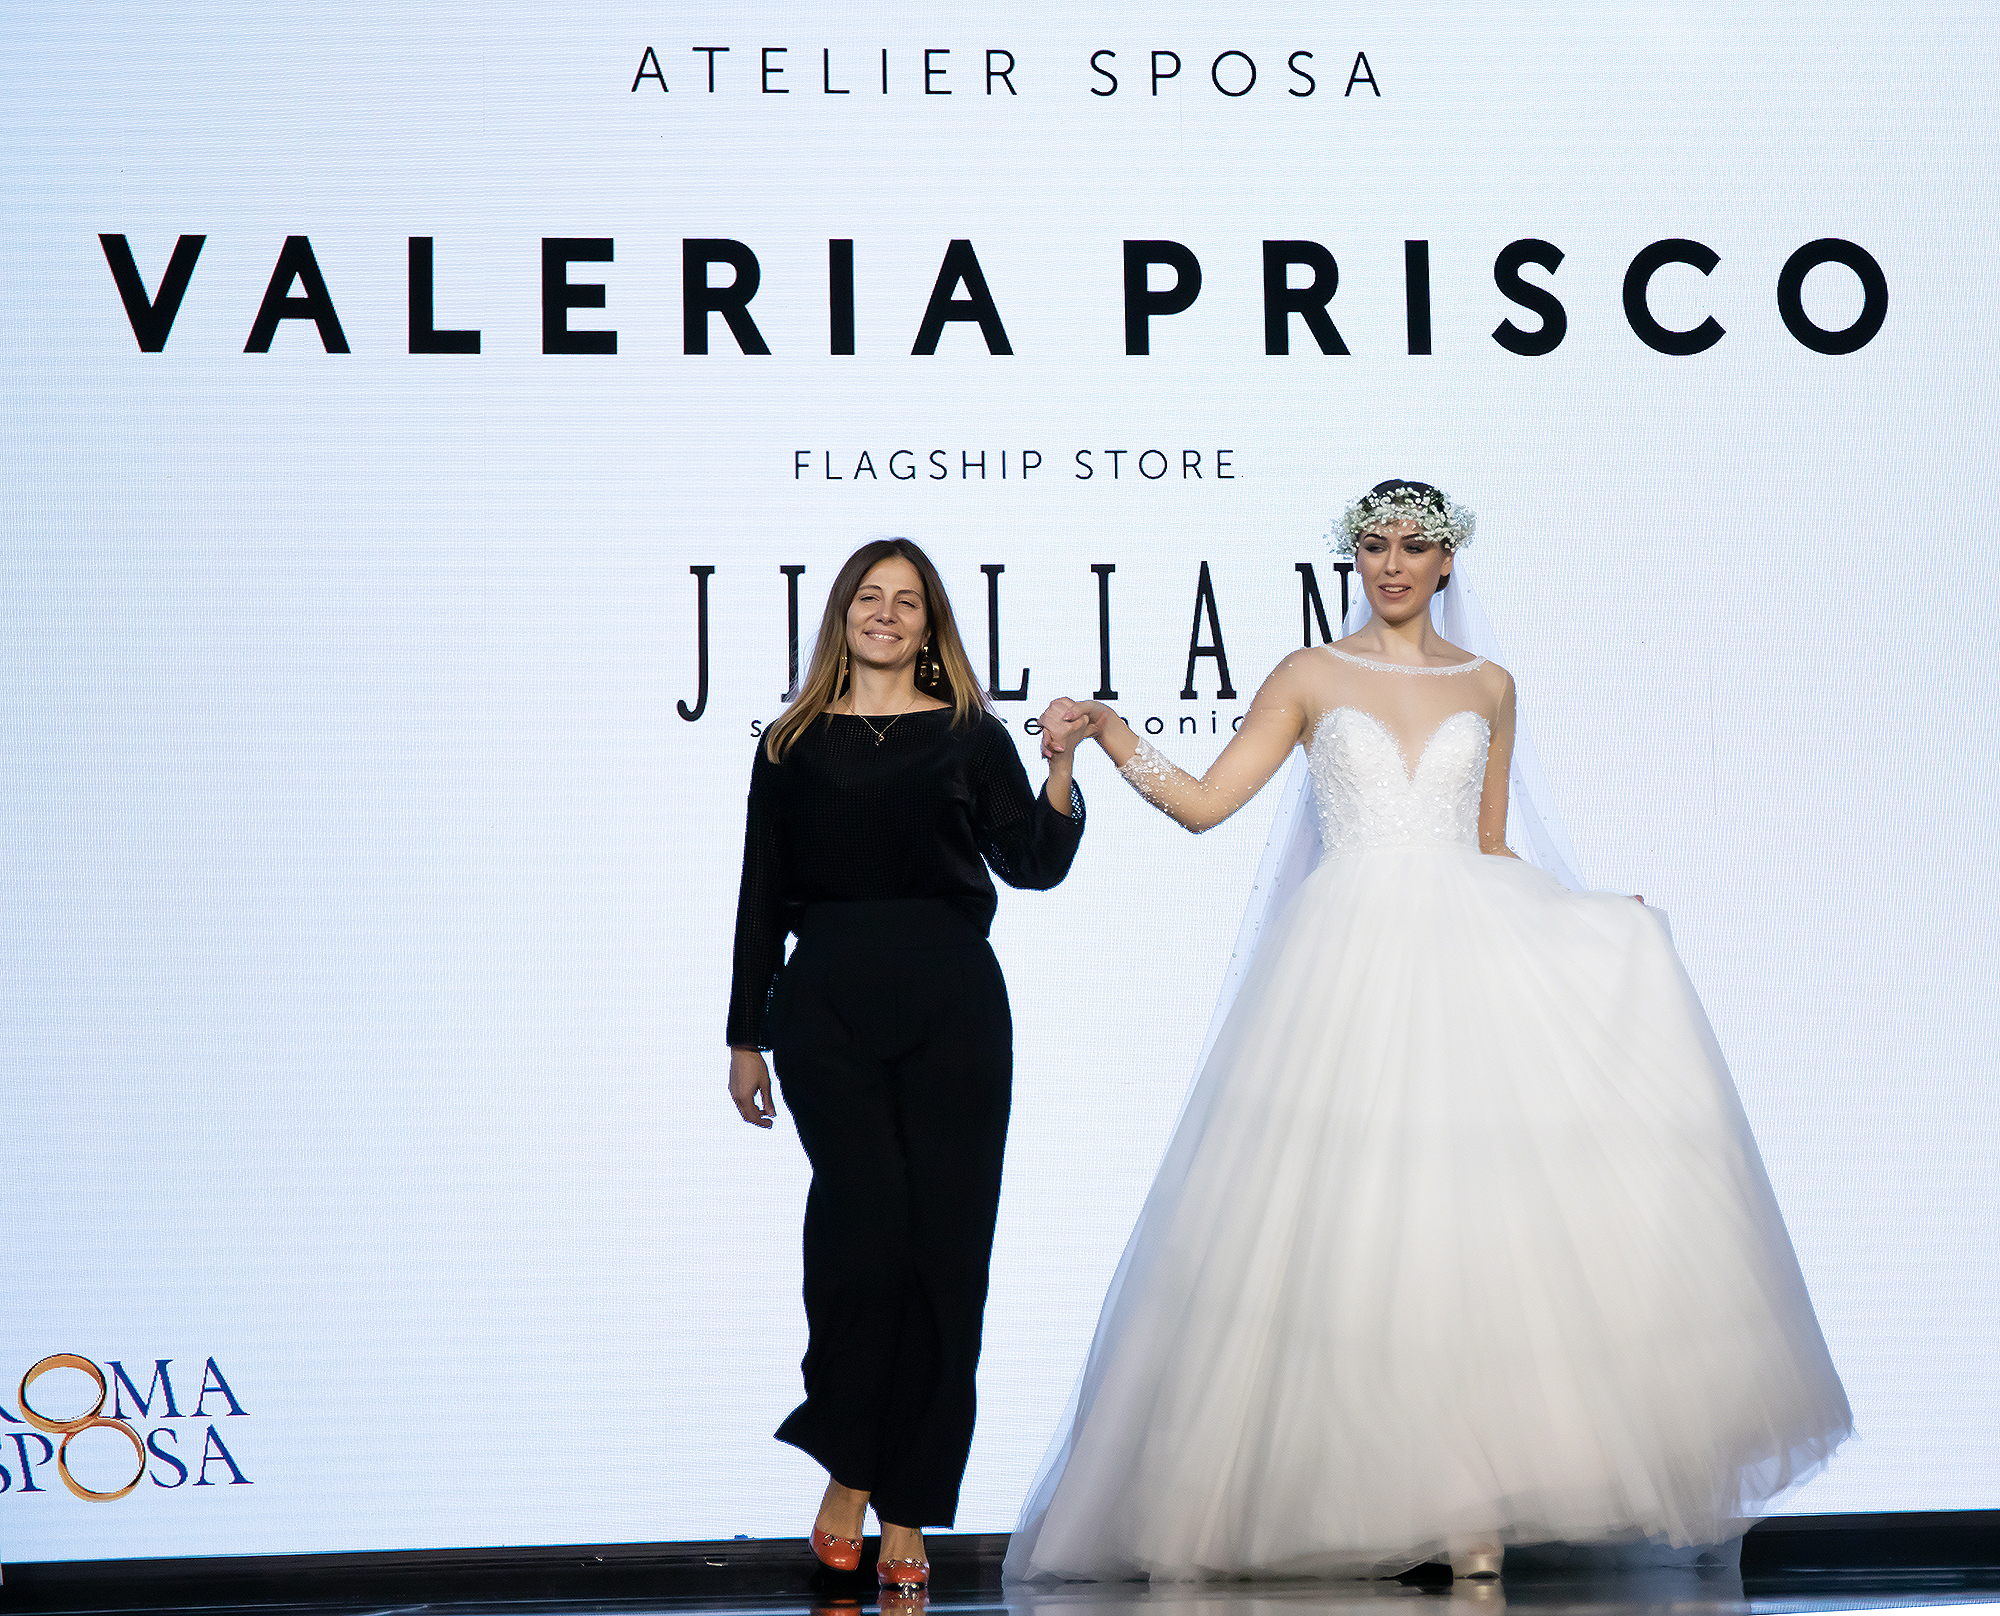 Valeria Prisco Atelier per Jillian a Roma Sposa 2021